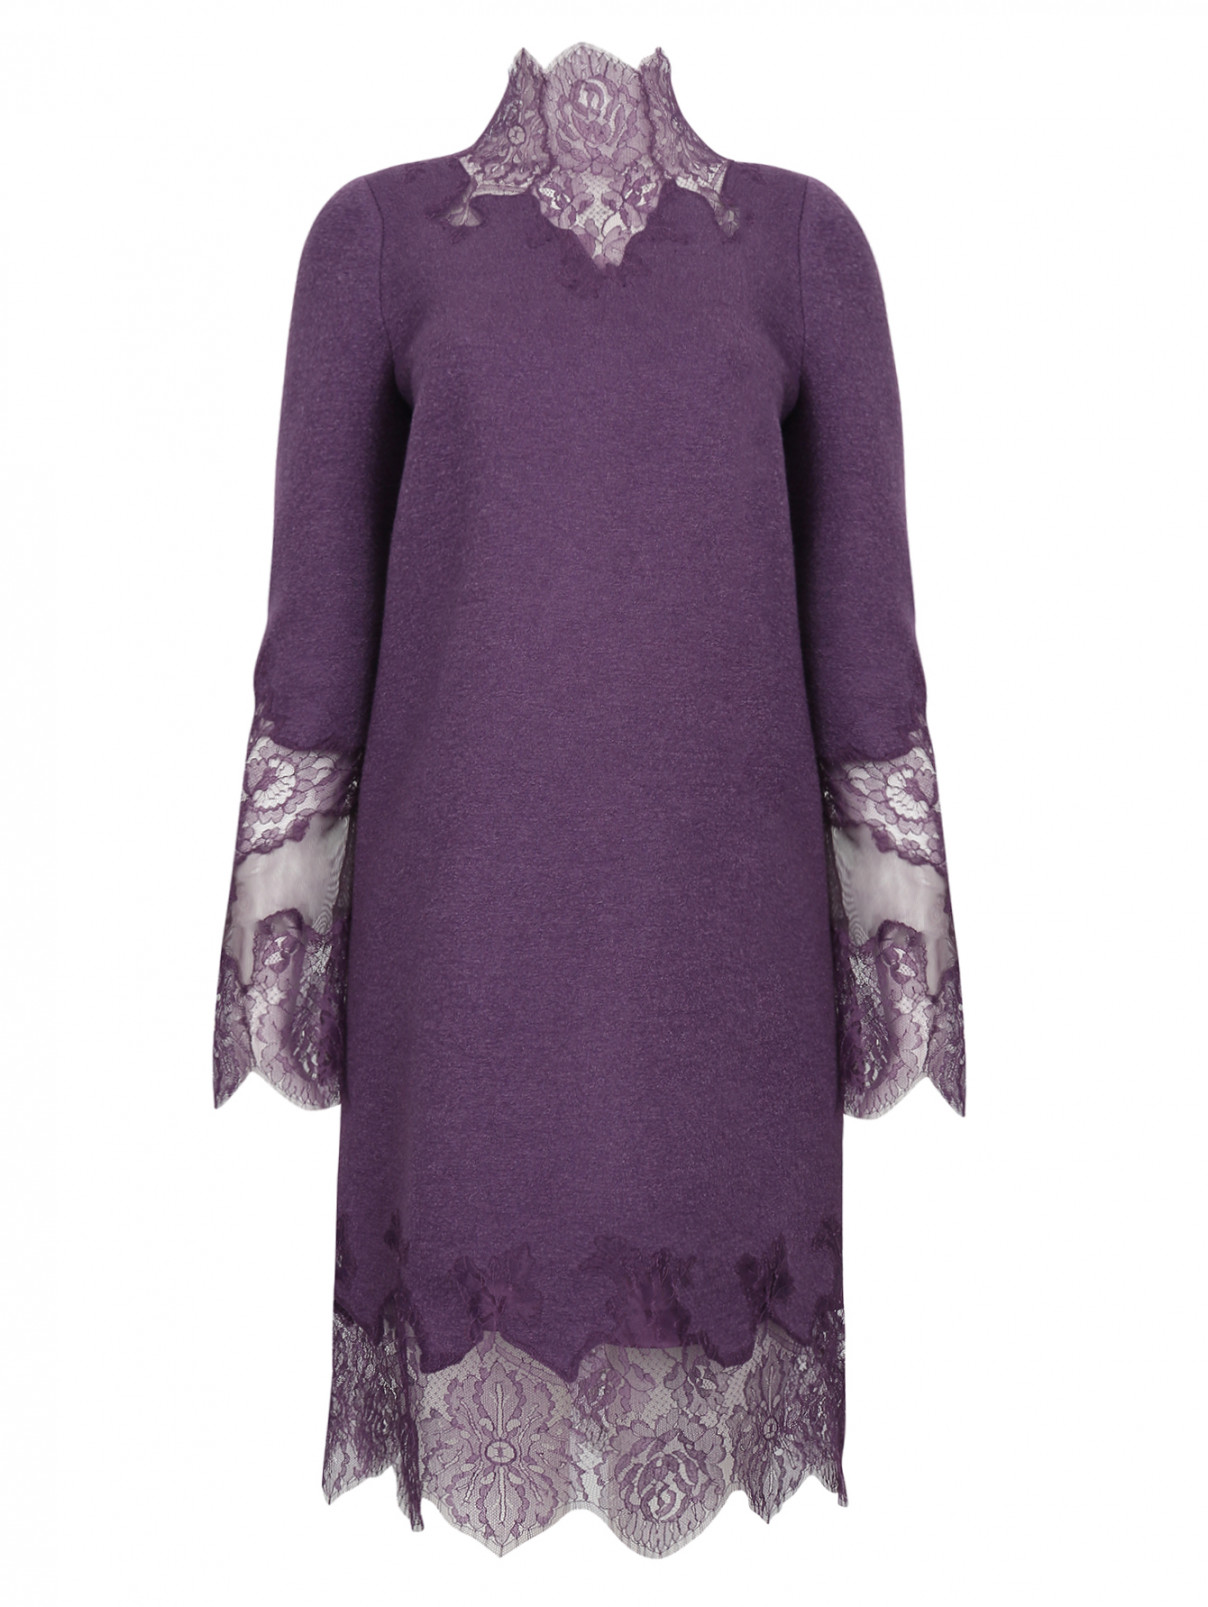 Платье-миди из шерсти, шелка и кашемира Ermanno Scervino  –  Общий вид  – Цвет:  Фиолетовый